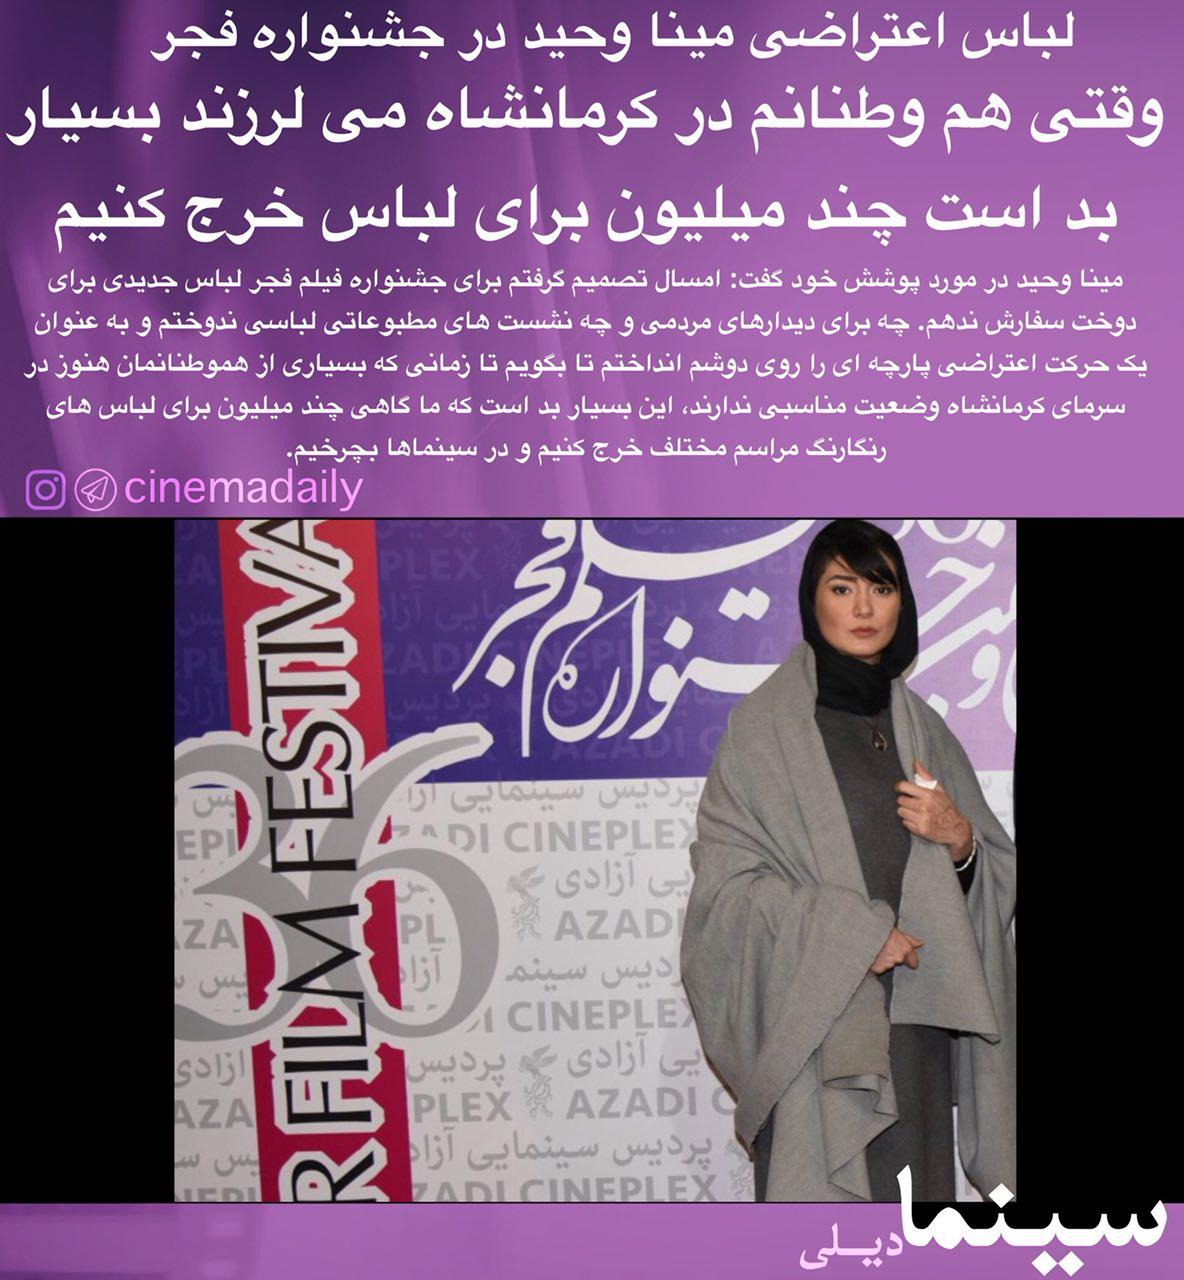 لباس اعتراضی خانم بازیگر در جشنواره فیلم فجر +عکس